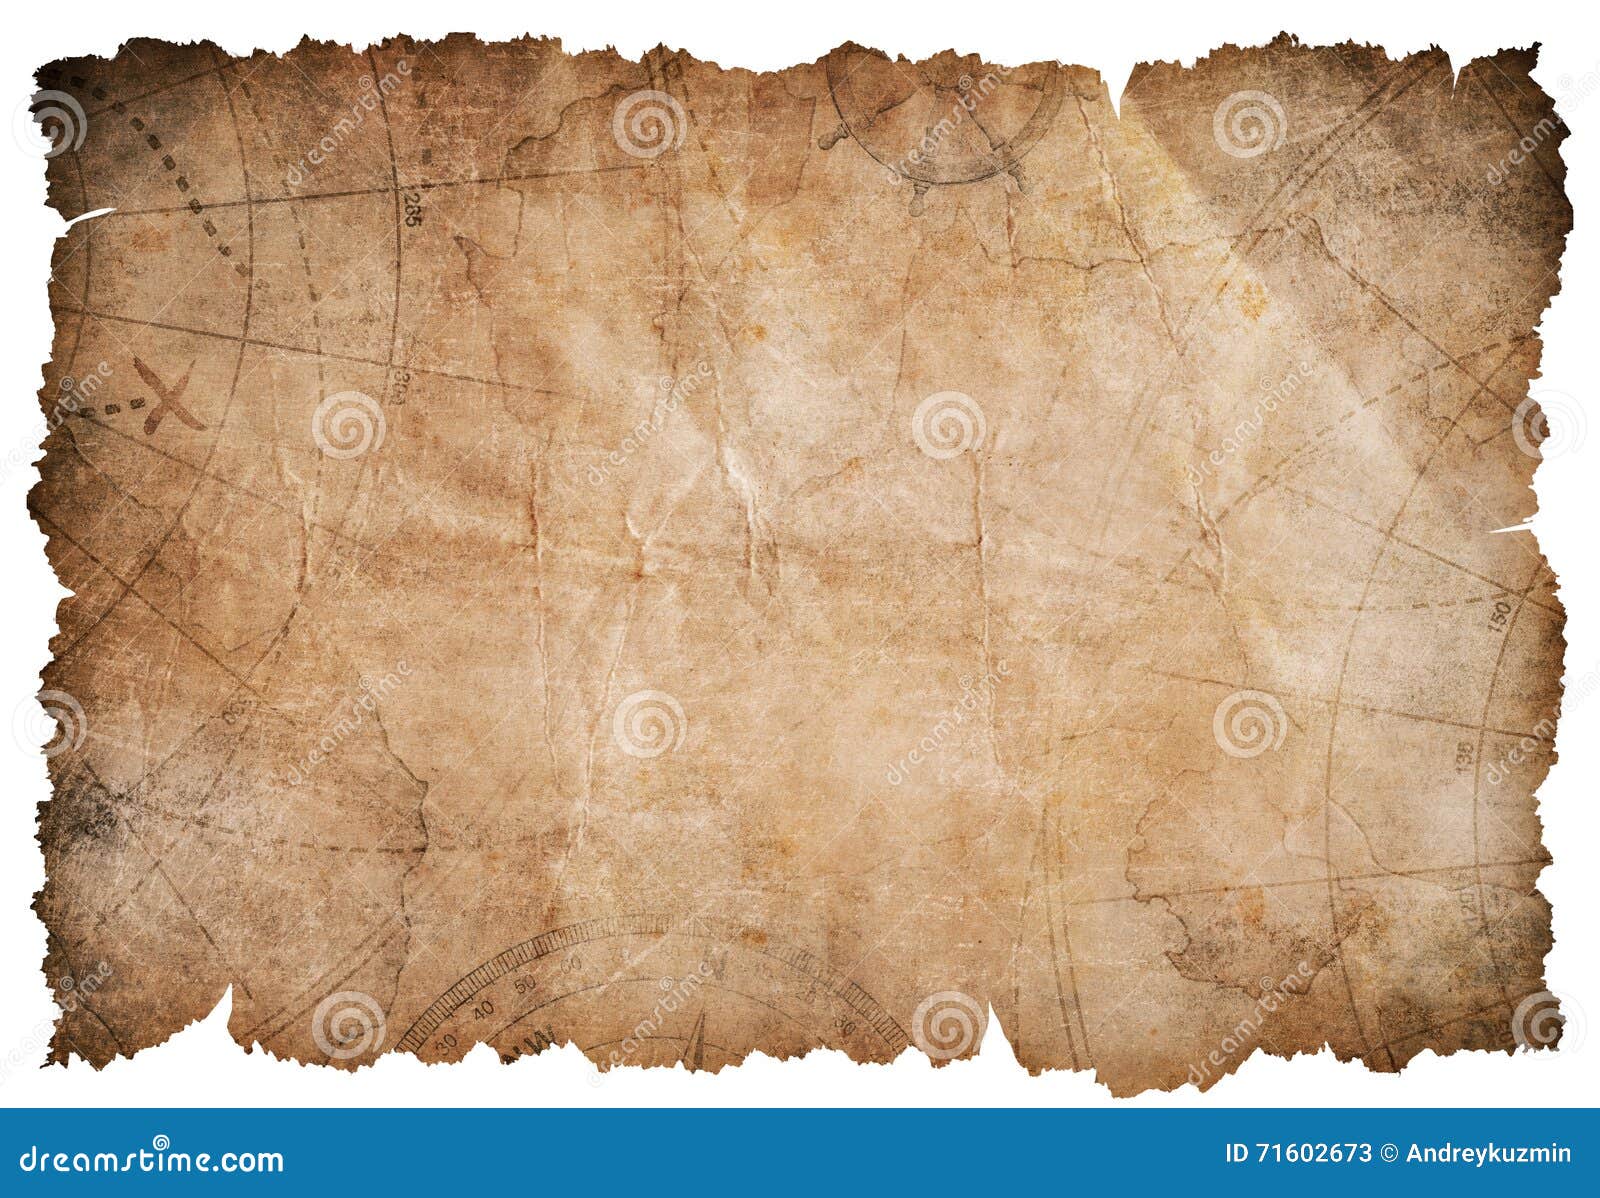 O Mapa Do Tesouro PNG , O Tesouro, Náutico, Os Piratas Imagem PNG